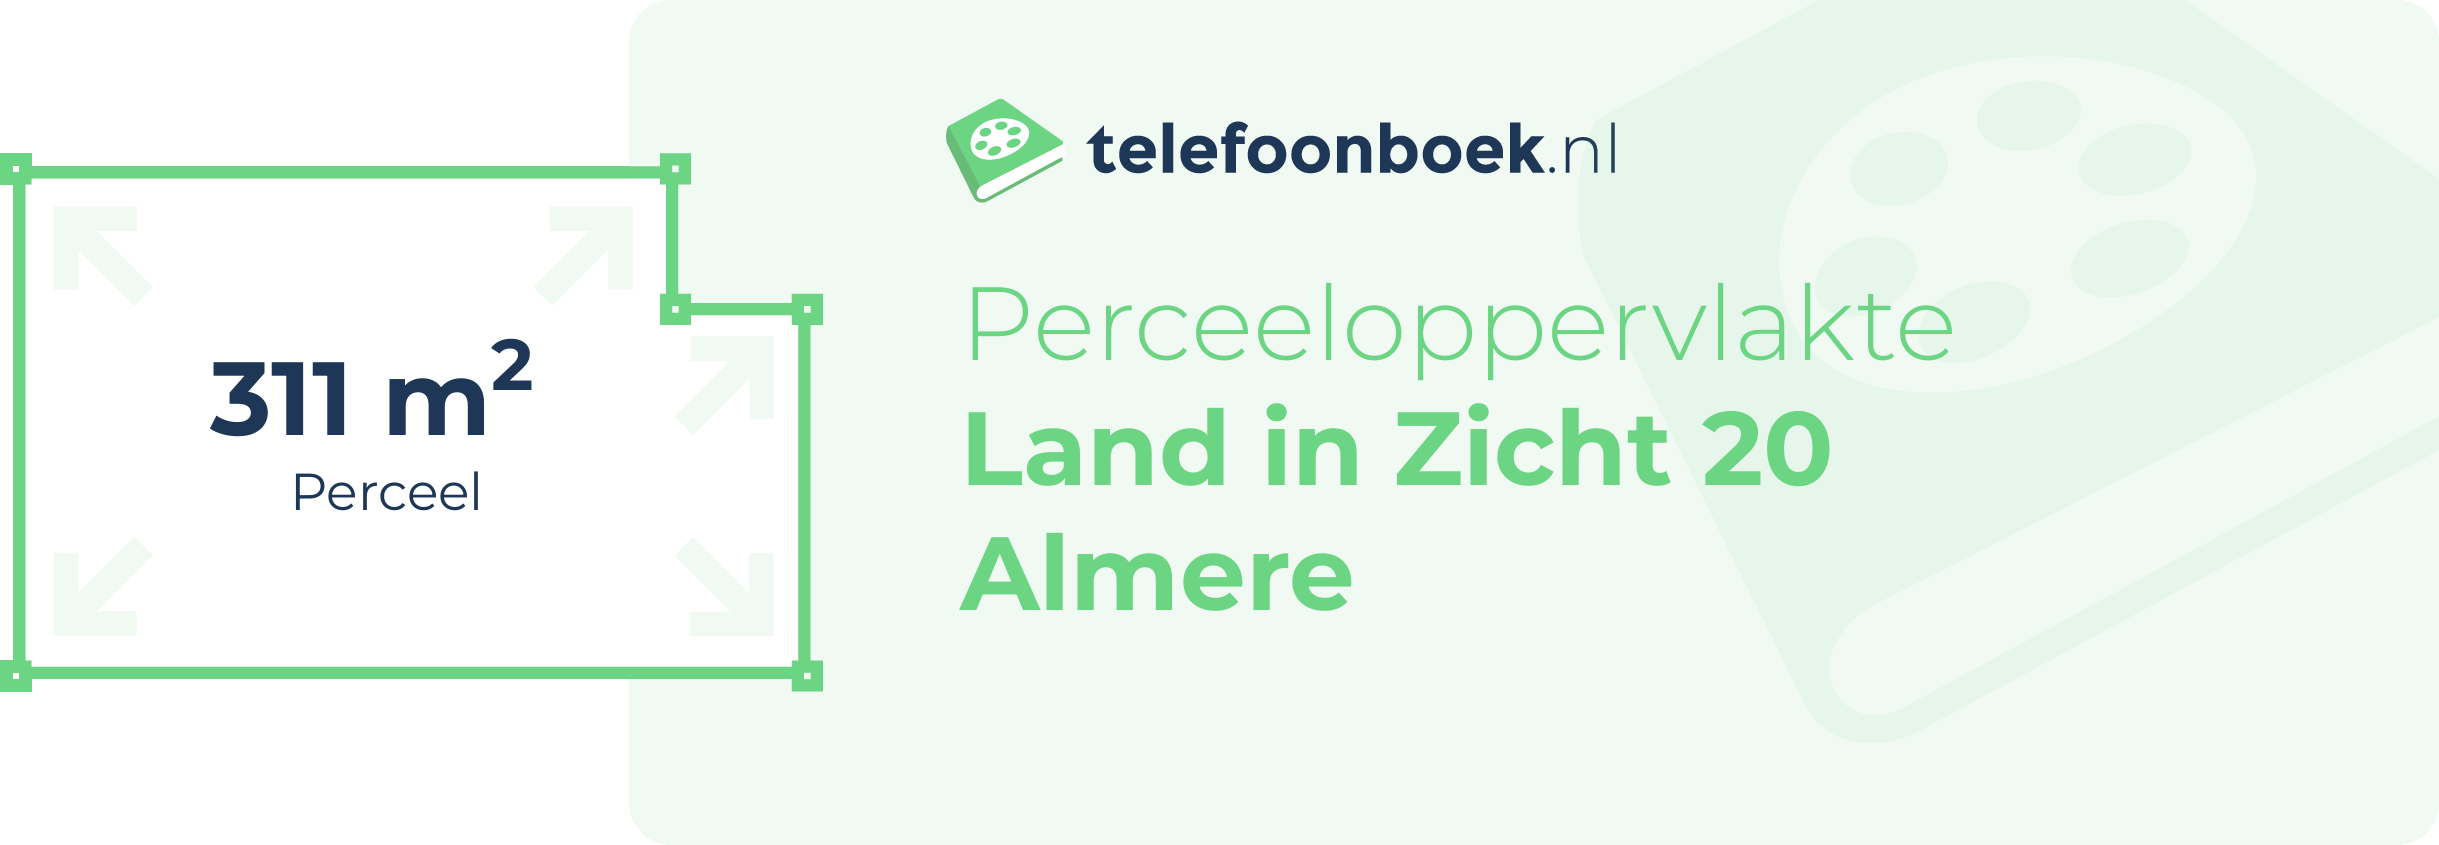 Perceeloppervlakte Land In Zicht 20 Almere